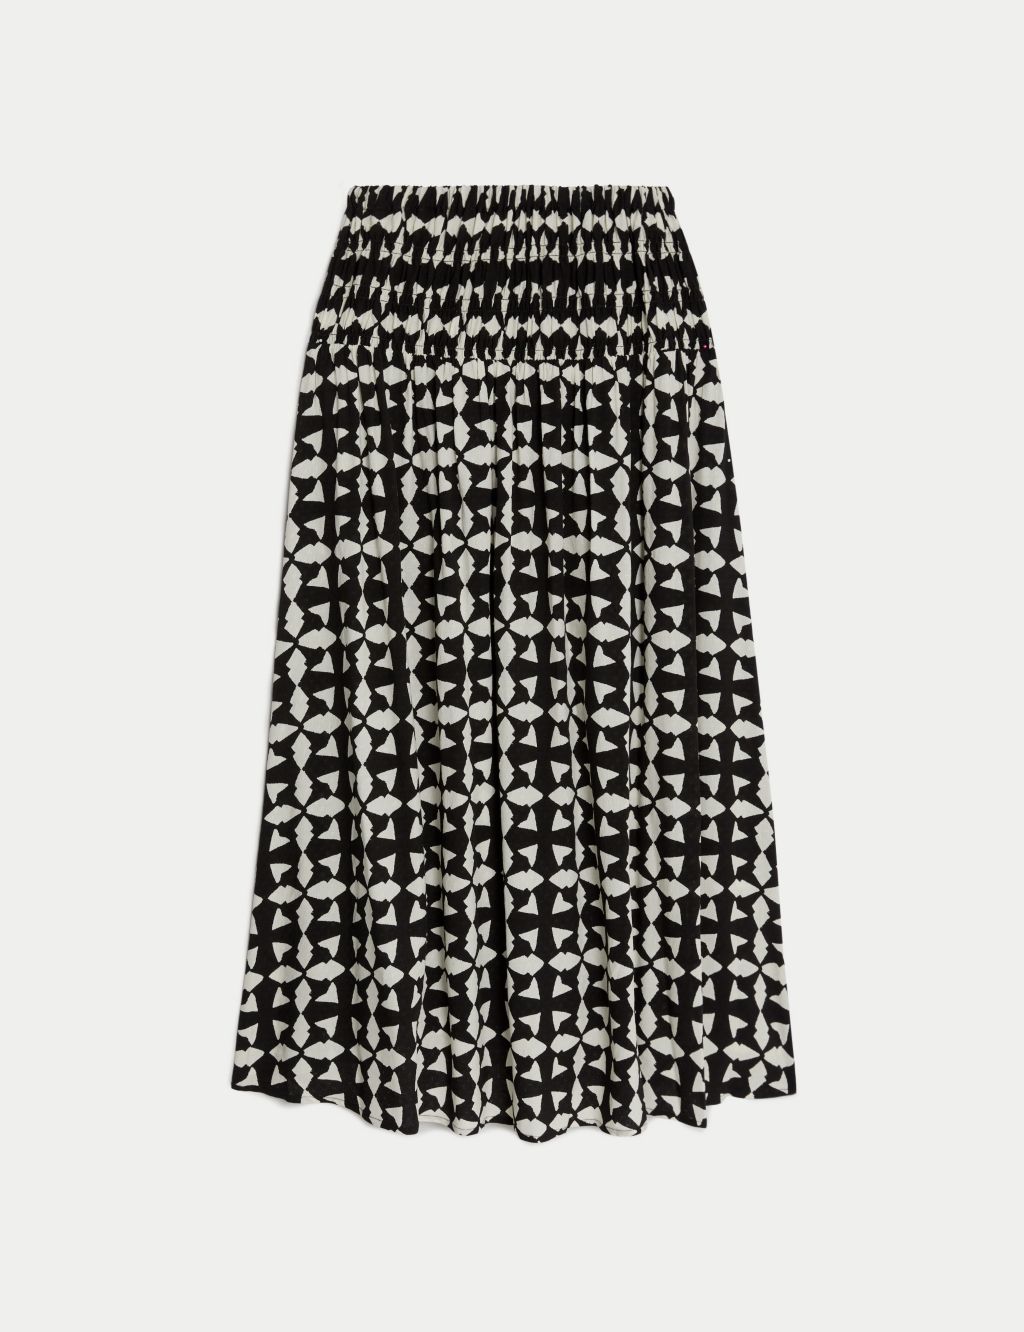 Printed Shirred Midi A-Line Skirt image 2